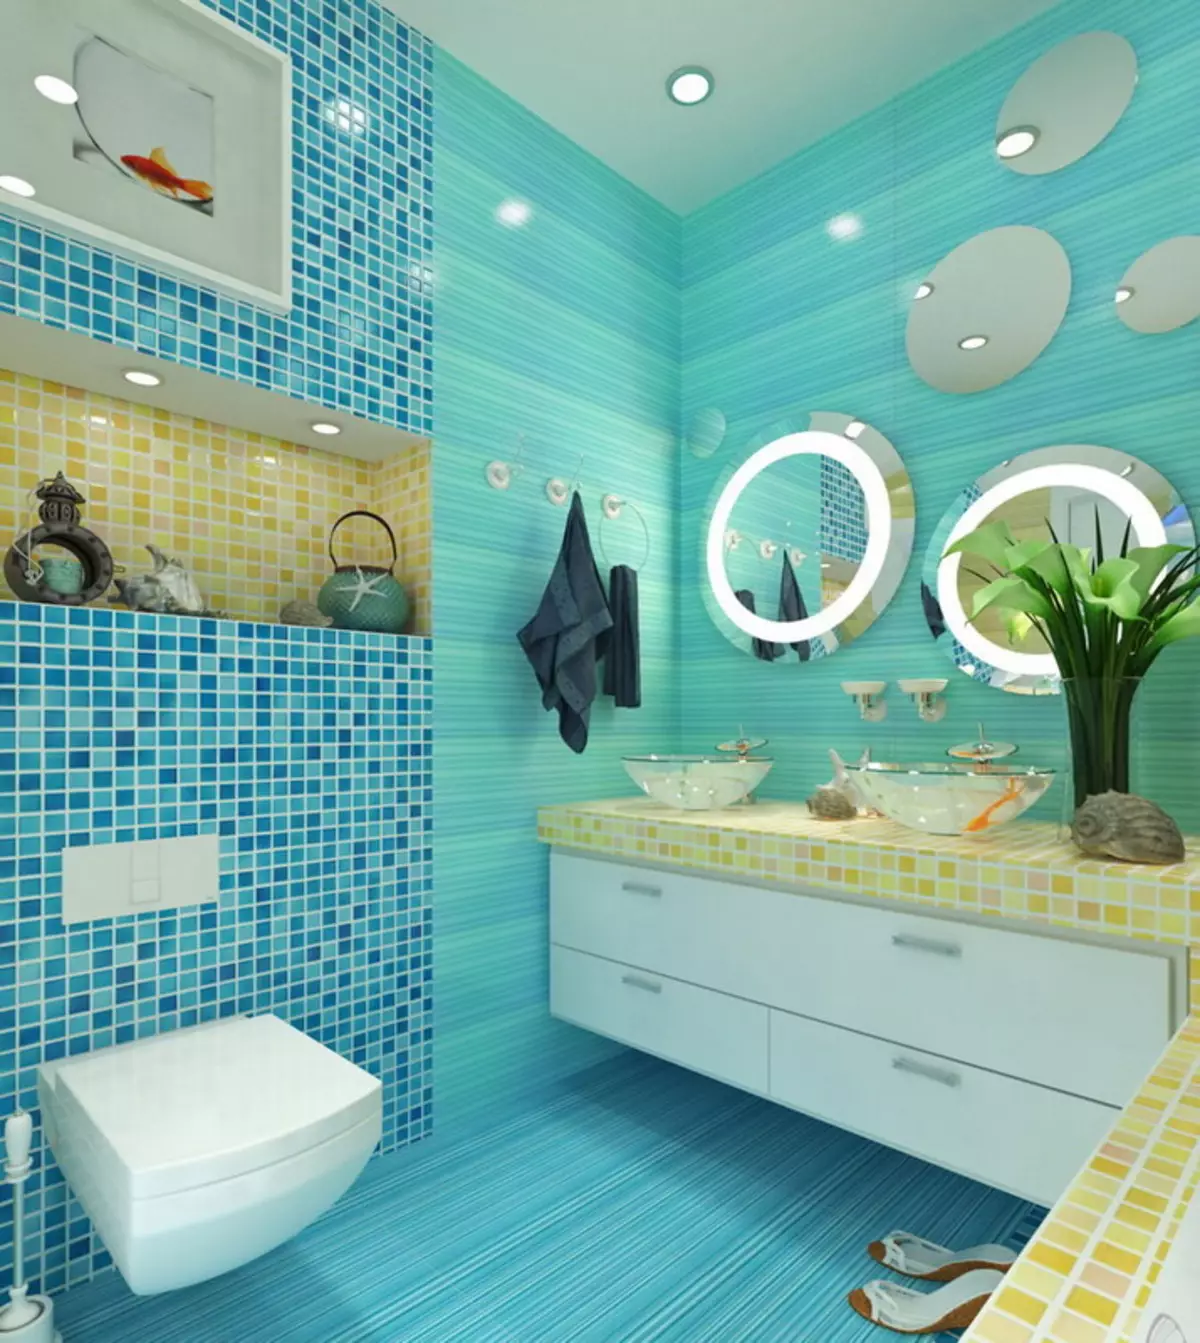 Туркуиза угаалгын өрөө (61 зураг): Энэ өнгөнд угаалгын өрөөний дизайны жишээ. Бид өнгөөр ​​ойлгож, үзэсгэлэнтэй дотоод засал чимэглэлийг бий болго 10203_32